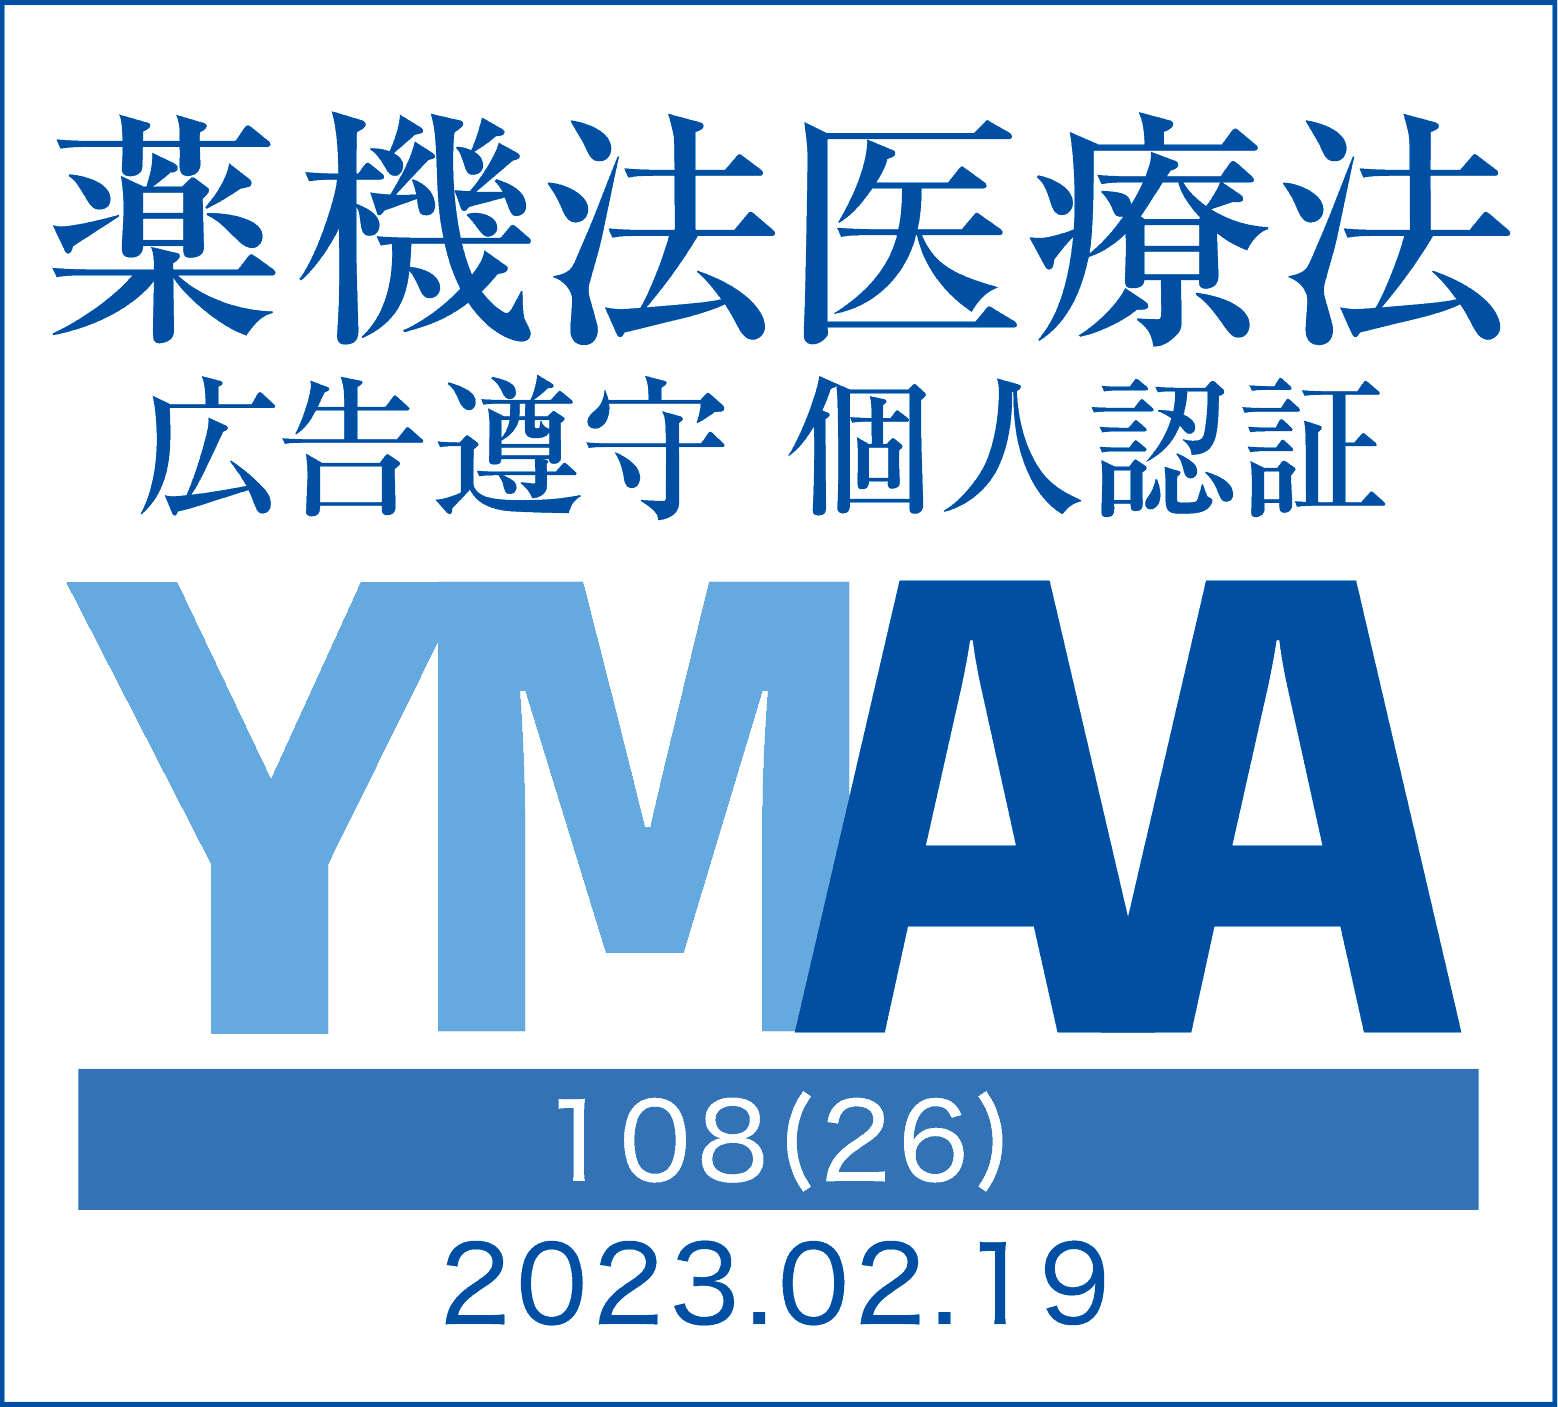 一般社団法人薬機法医療法規格協会
薬機法医療法広告遵守個人認証 YMAA取得 認定番号108(26)